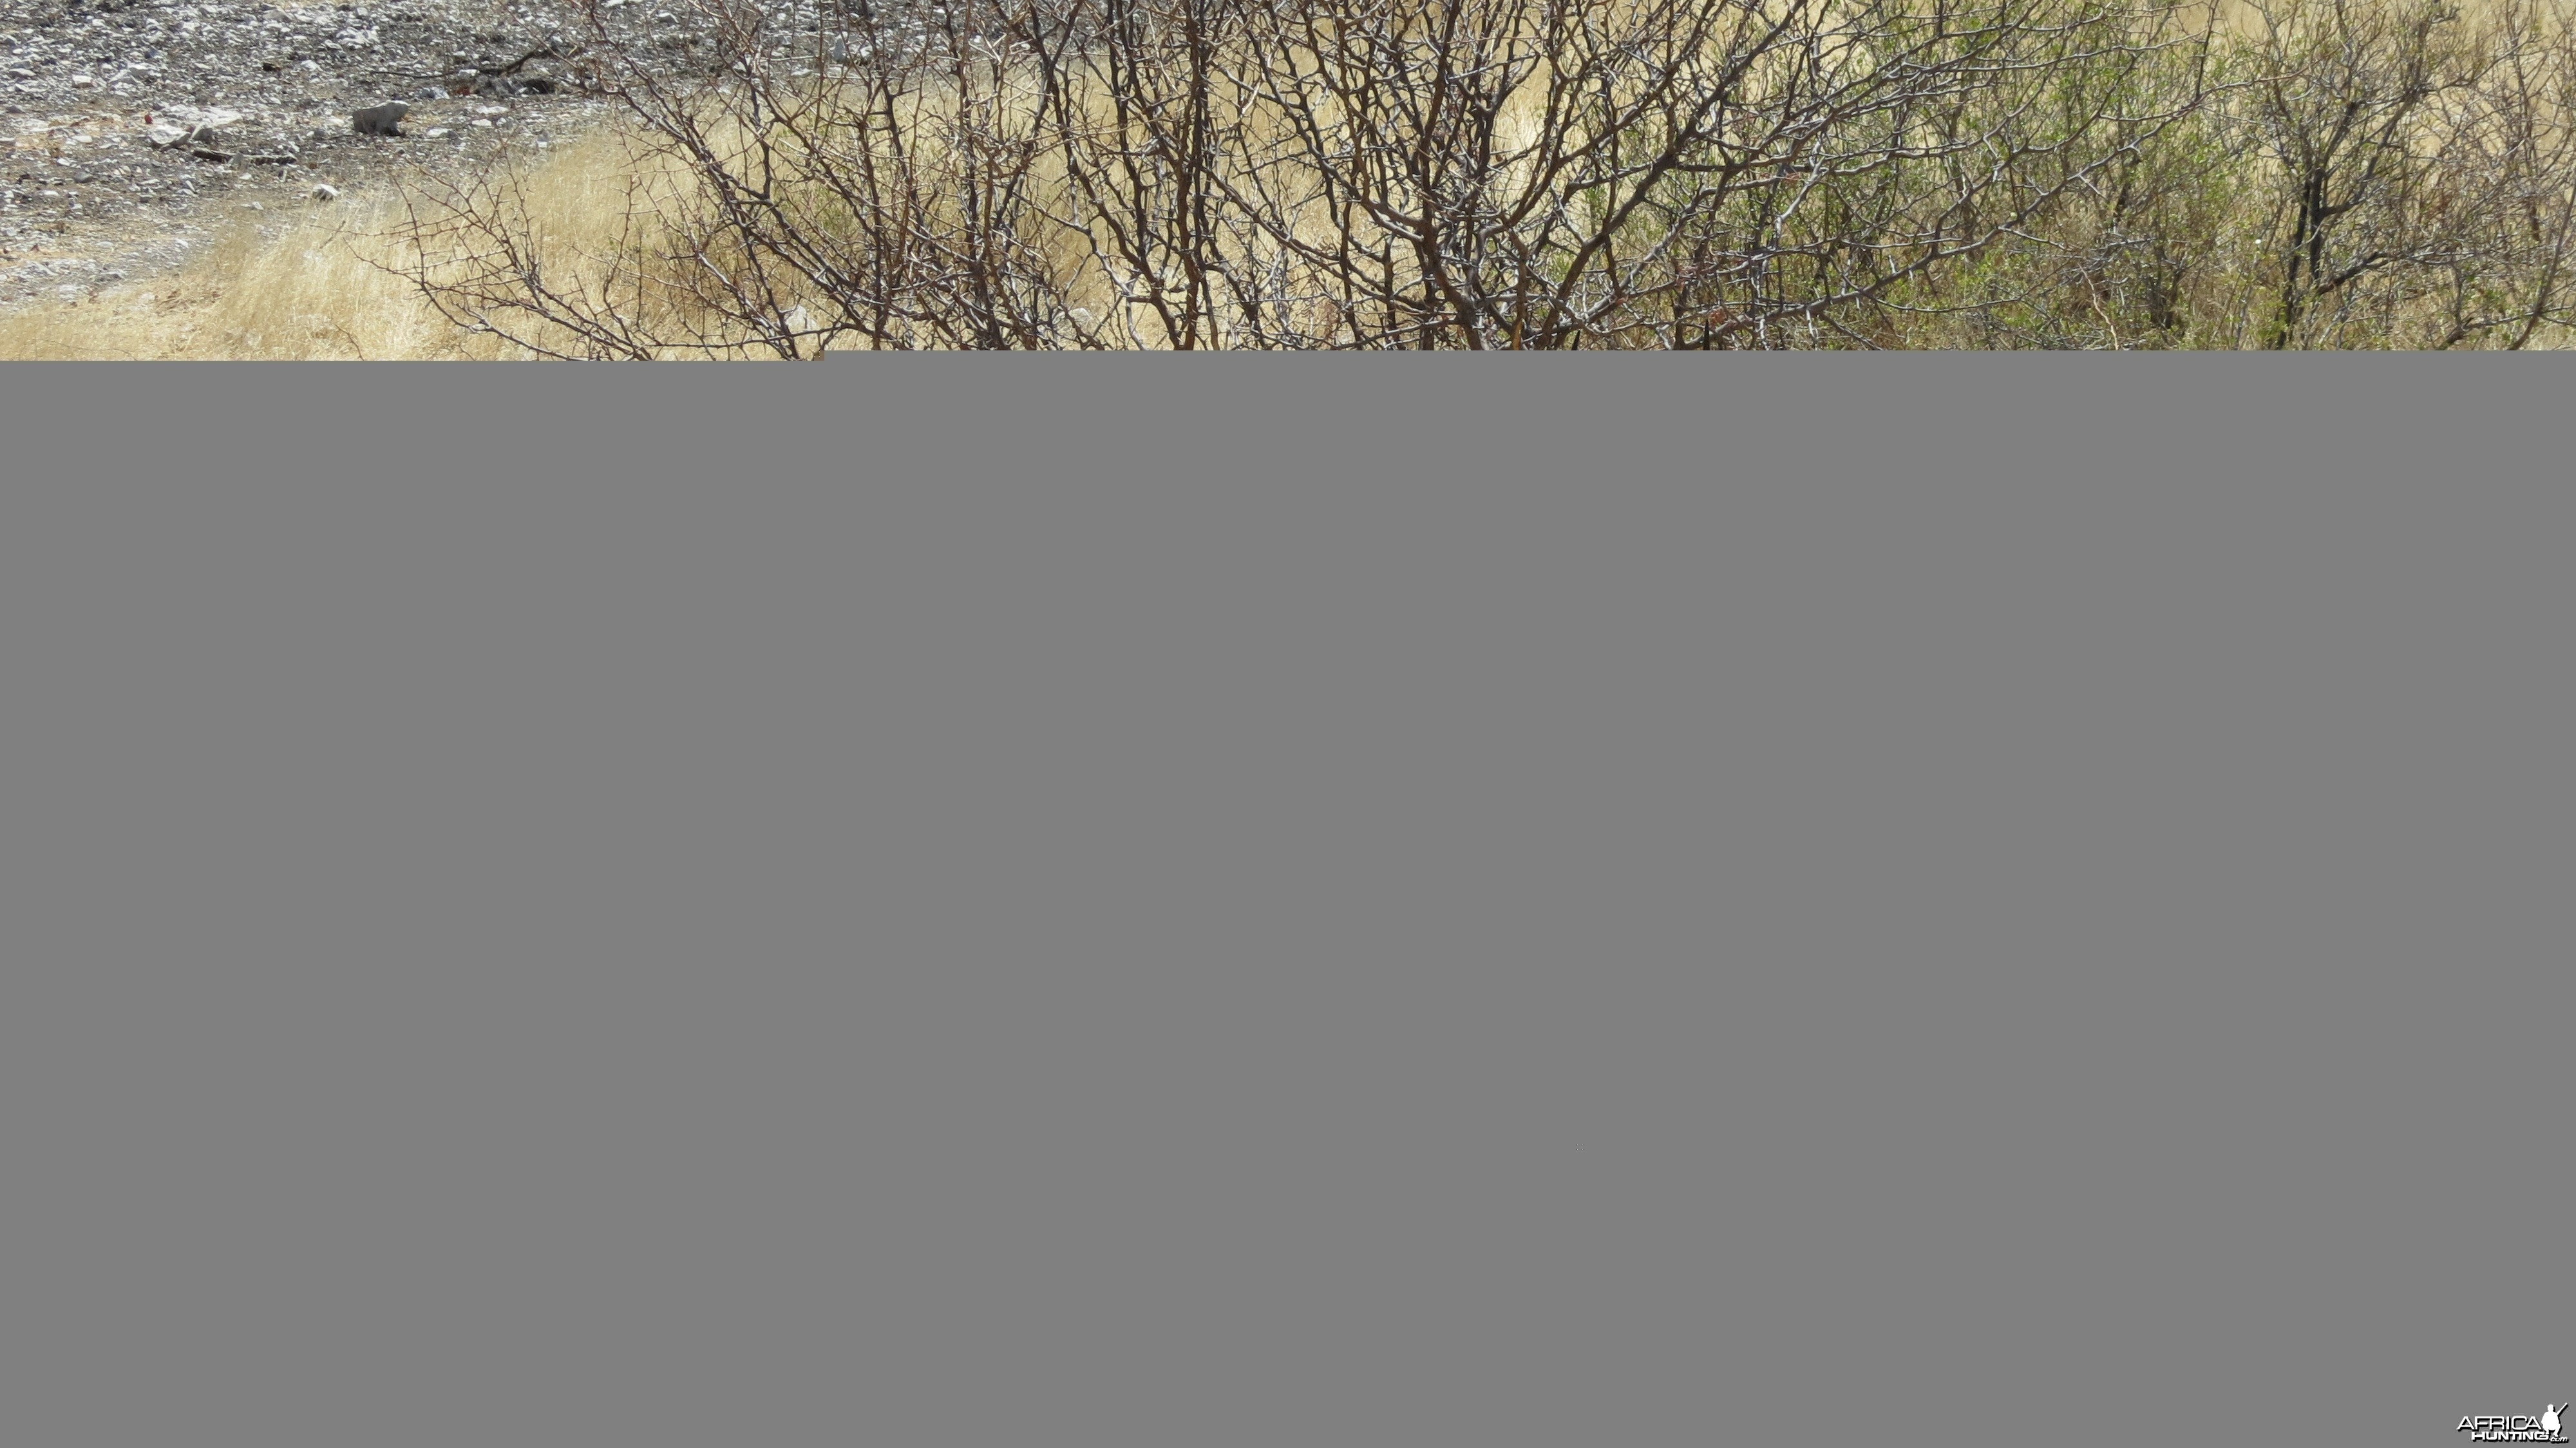 Black-Faced Impala at Etosha National Park